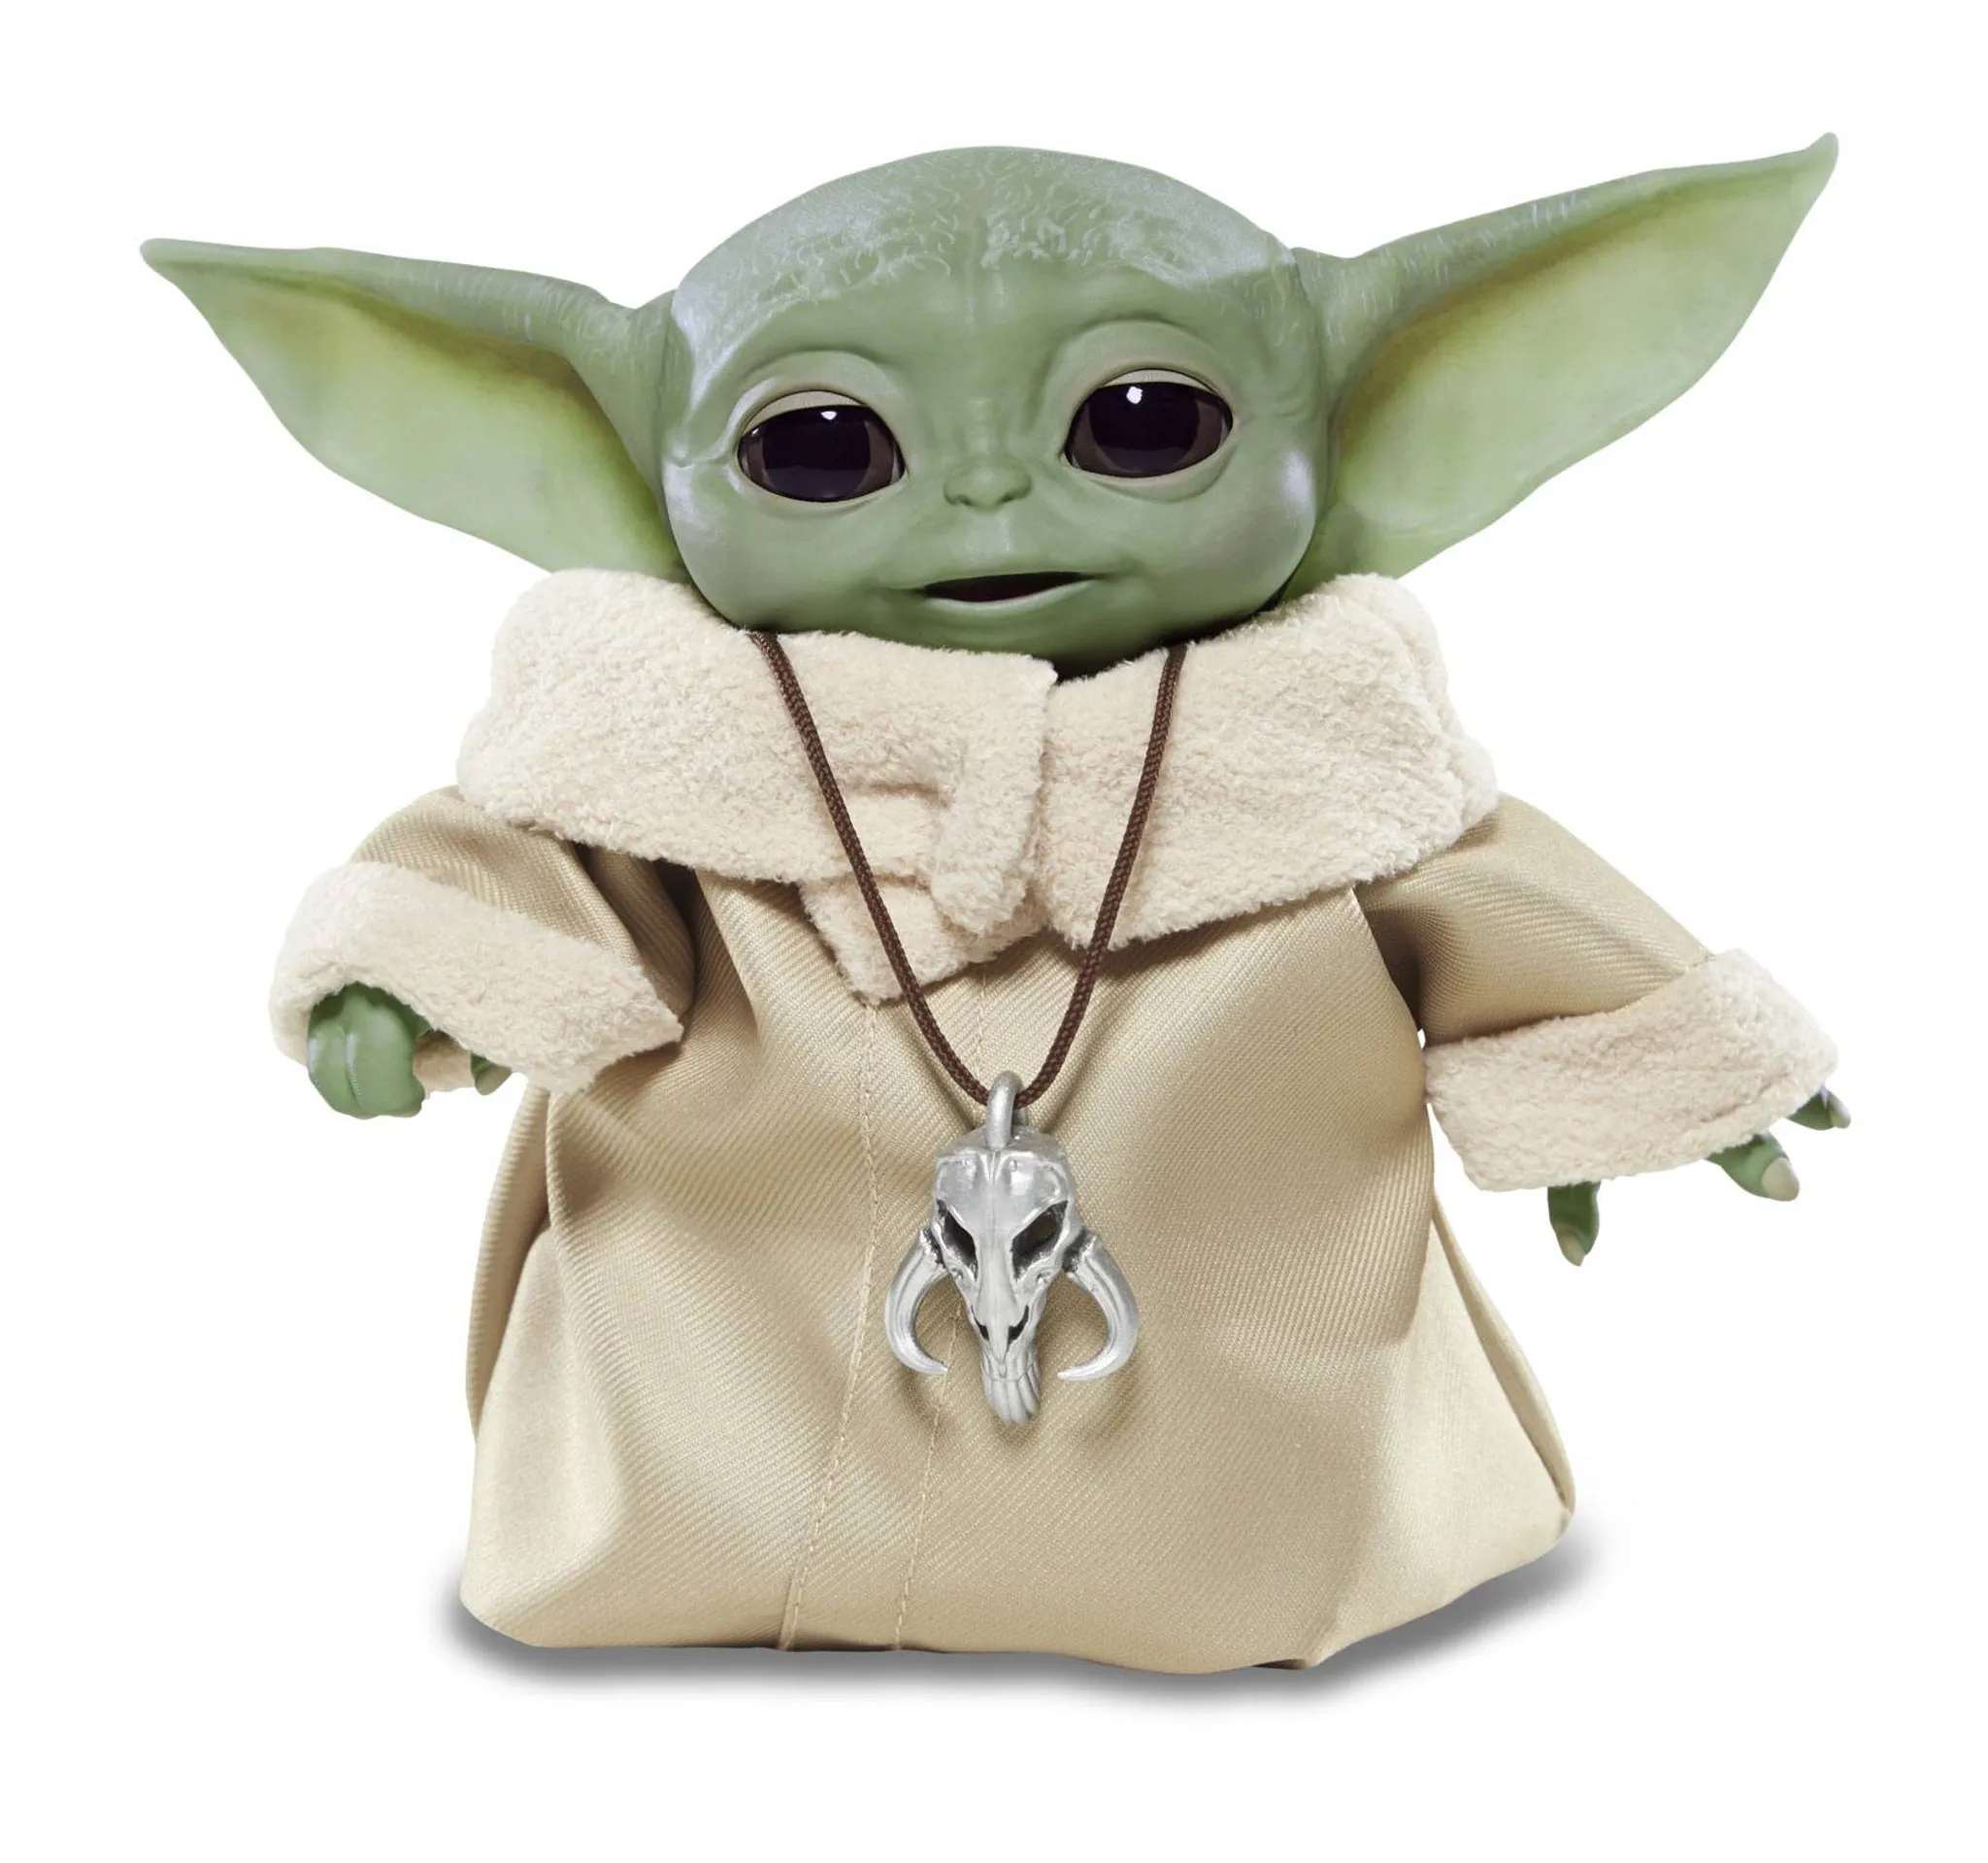 Star Wars „The Child“ Plüschfigur, ca. 28 cm, Kuschelfigur Yoda The  Mandalorian online bestellen